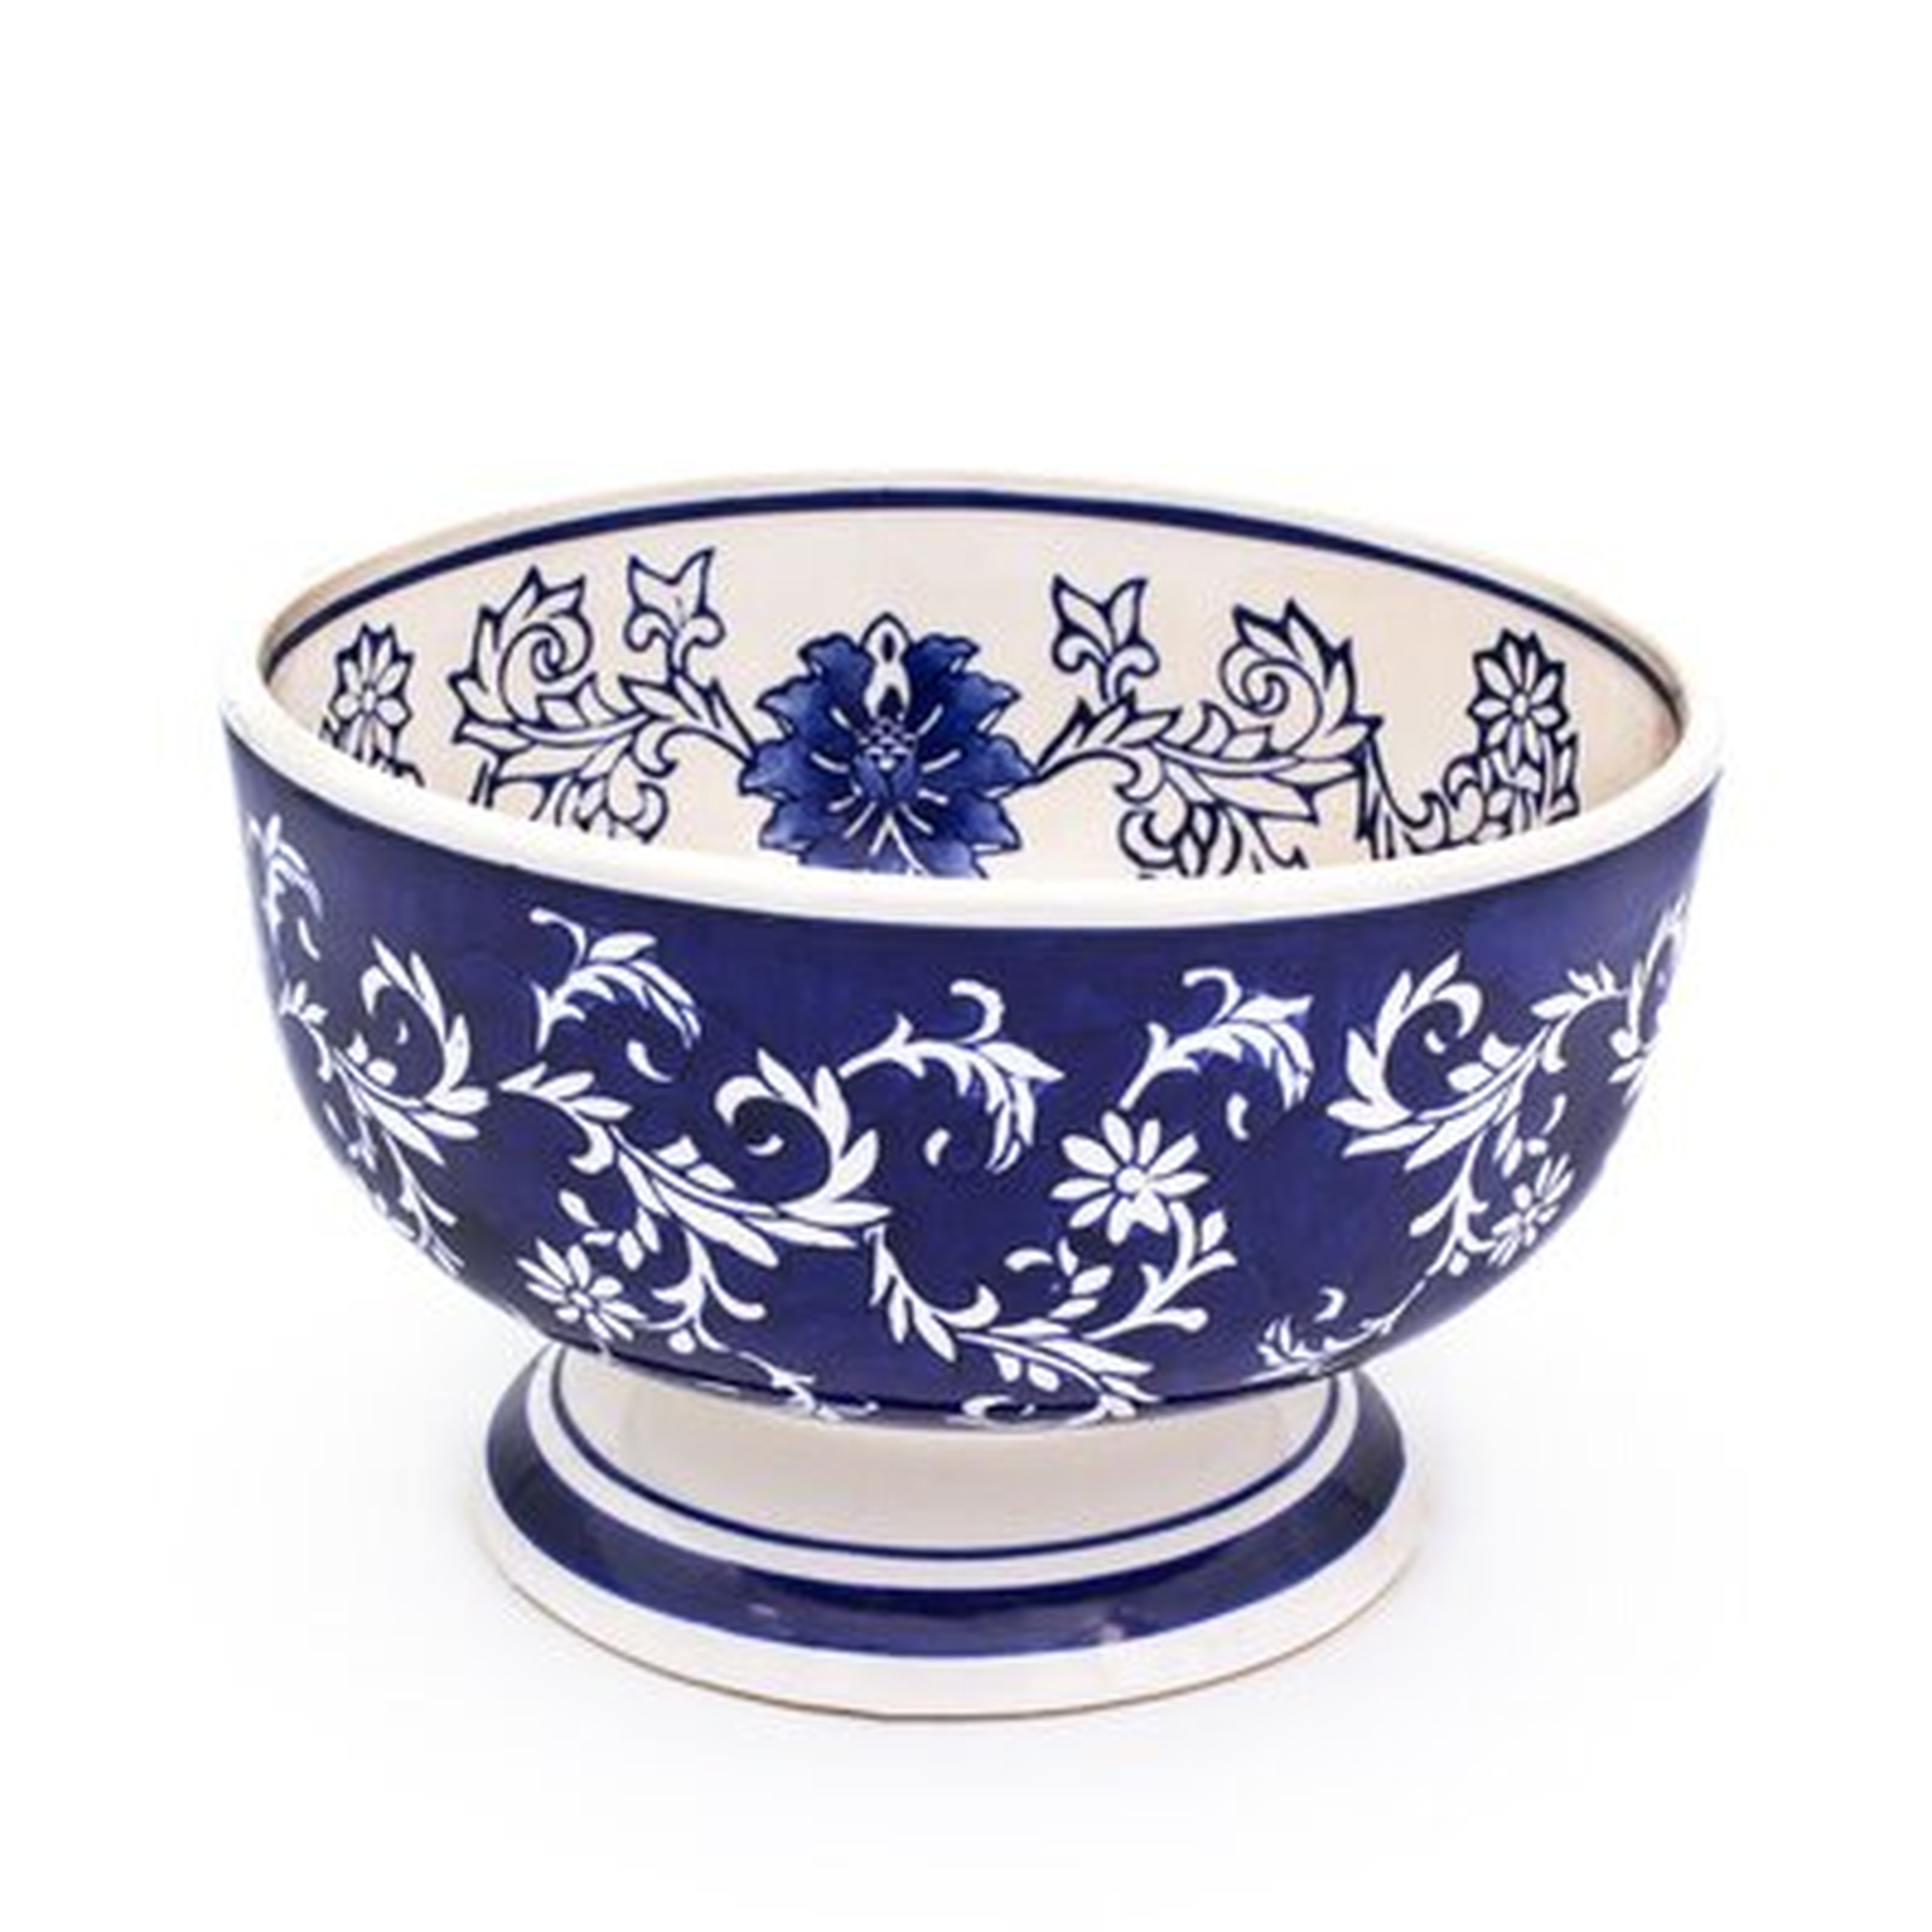 Alcott Ceramic Decorative Bowl in Blue/White - Birch Lane